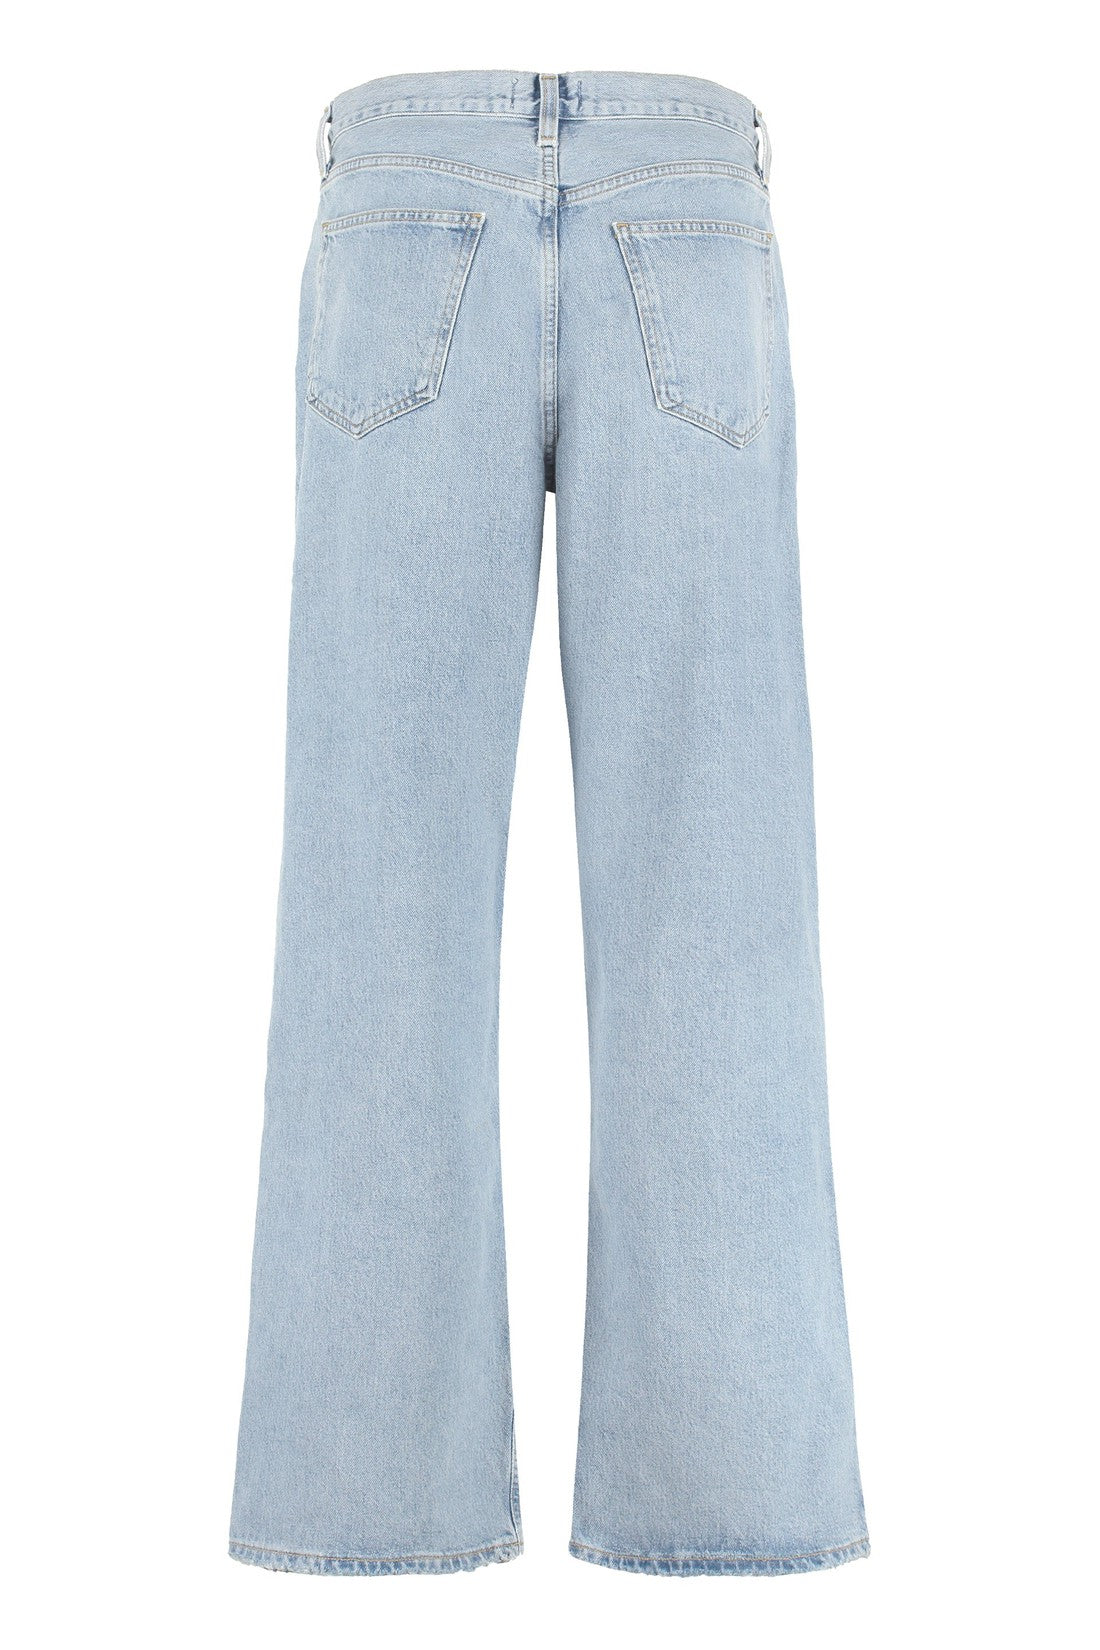 AGOLDE-OUTLET-SALE-Baggy jeans-ARCHIVIST